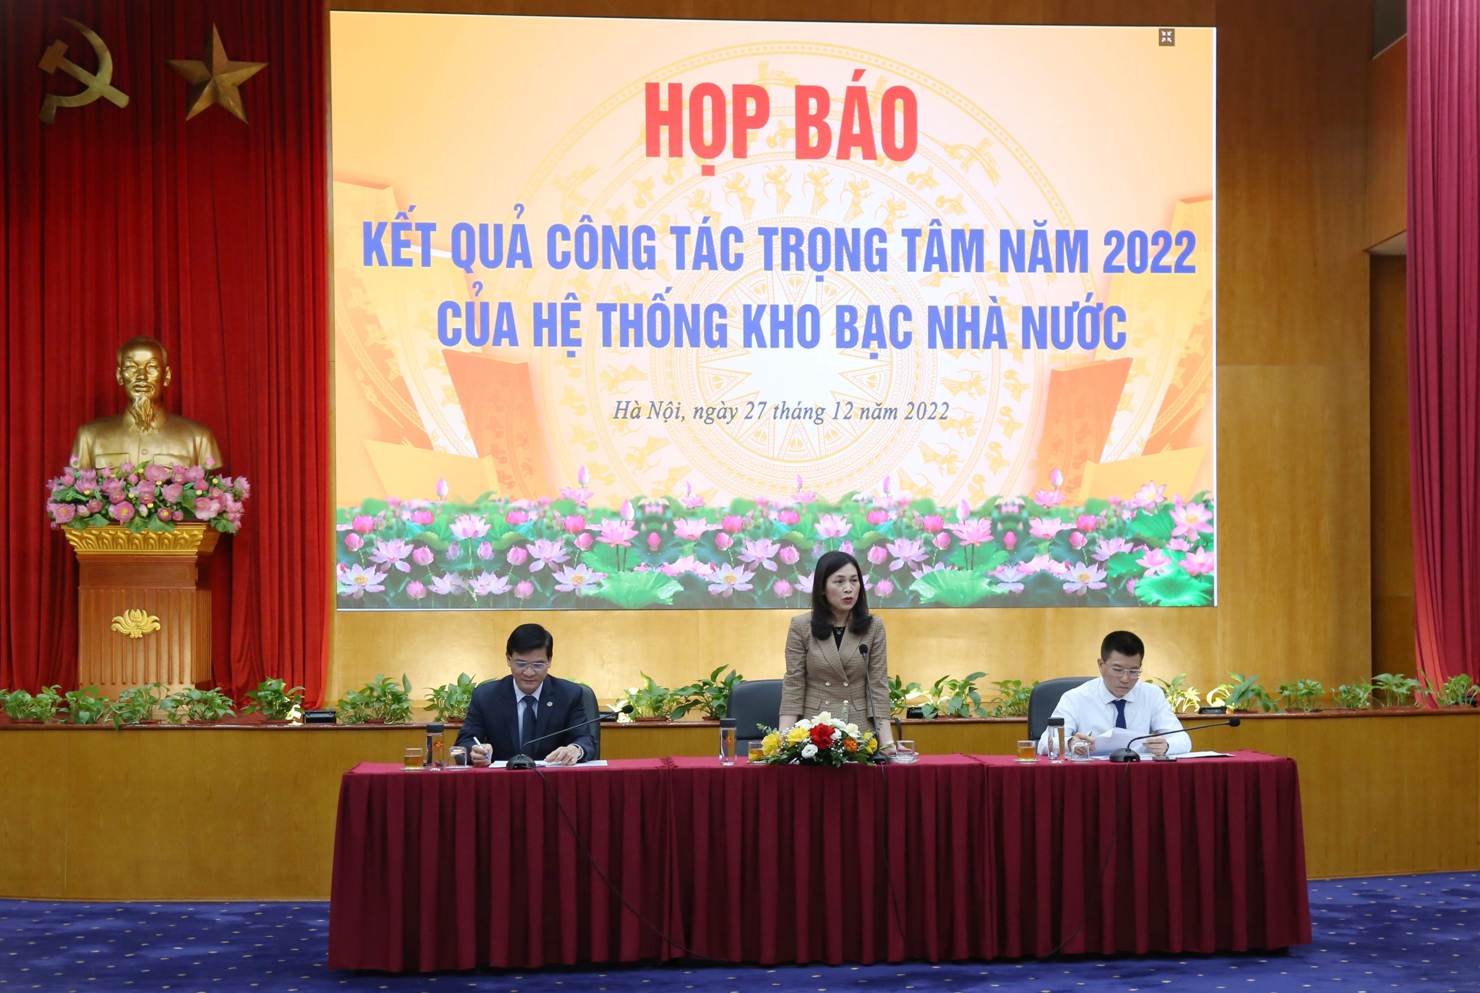 Bà Trần Thị Huệ - Phó Tổng Giám đốc KBNN phát biểu tại buổi họp báo.